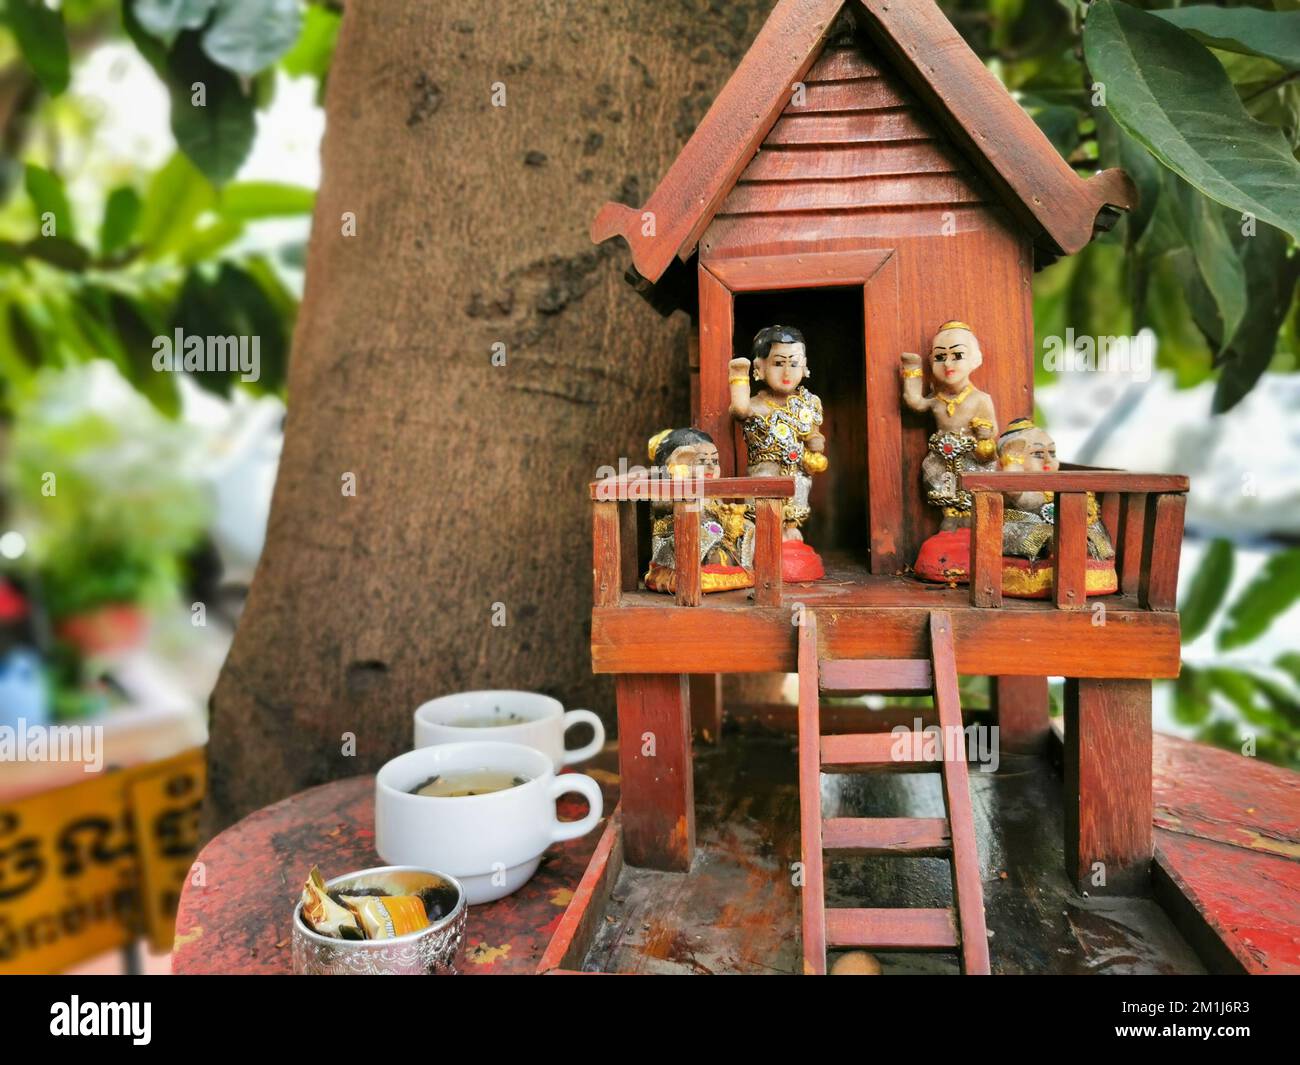 Kambodschanischer Schrein. Ein traditionelles Holzhaus für Gottesdienst und spirituellen Glauben. Buddhistische Religion und Kultur in Phnom Penh, Kambodscha. Stockfoto